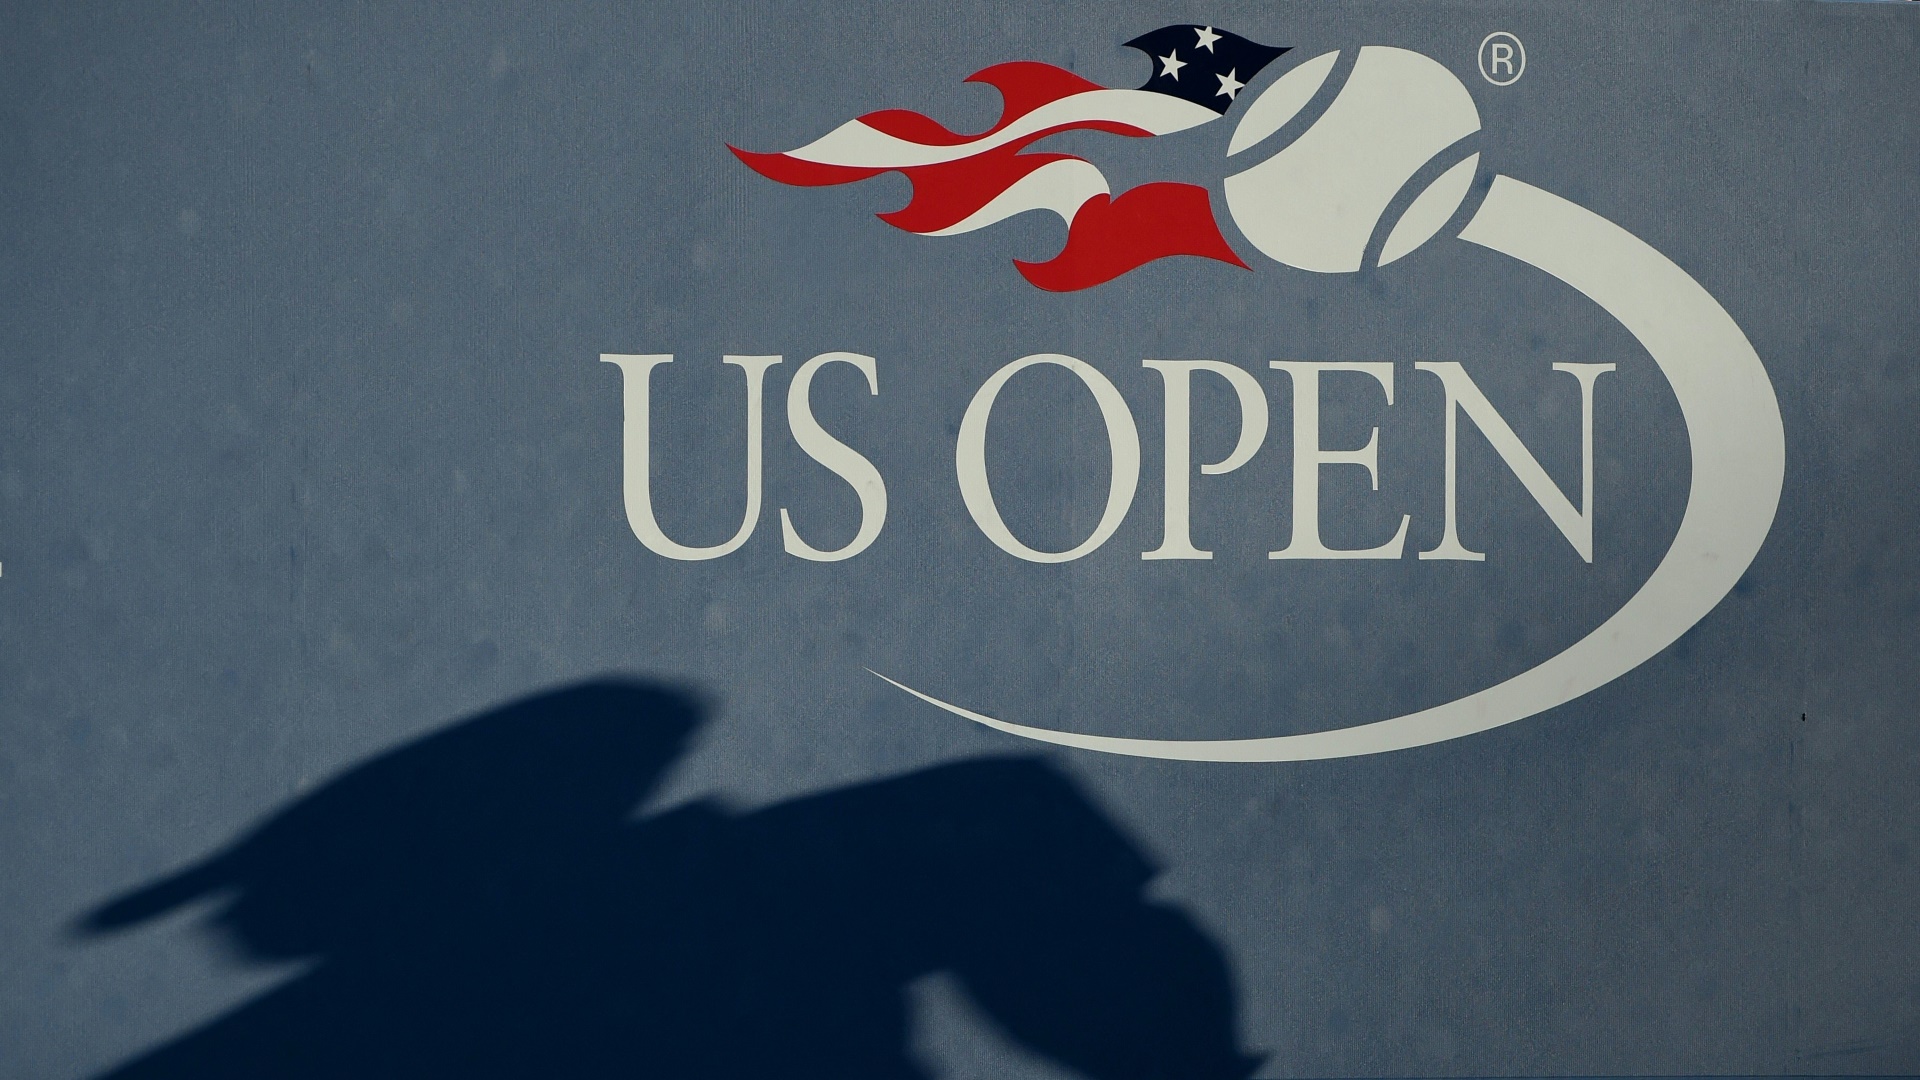 Tennis Sportdeutschland überträgt US Open bis 2027 Sports Illustrated